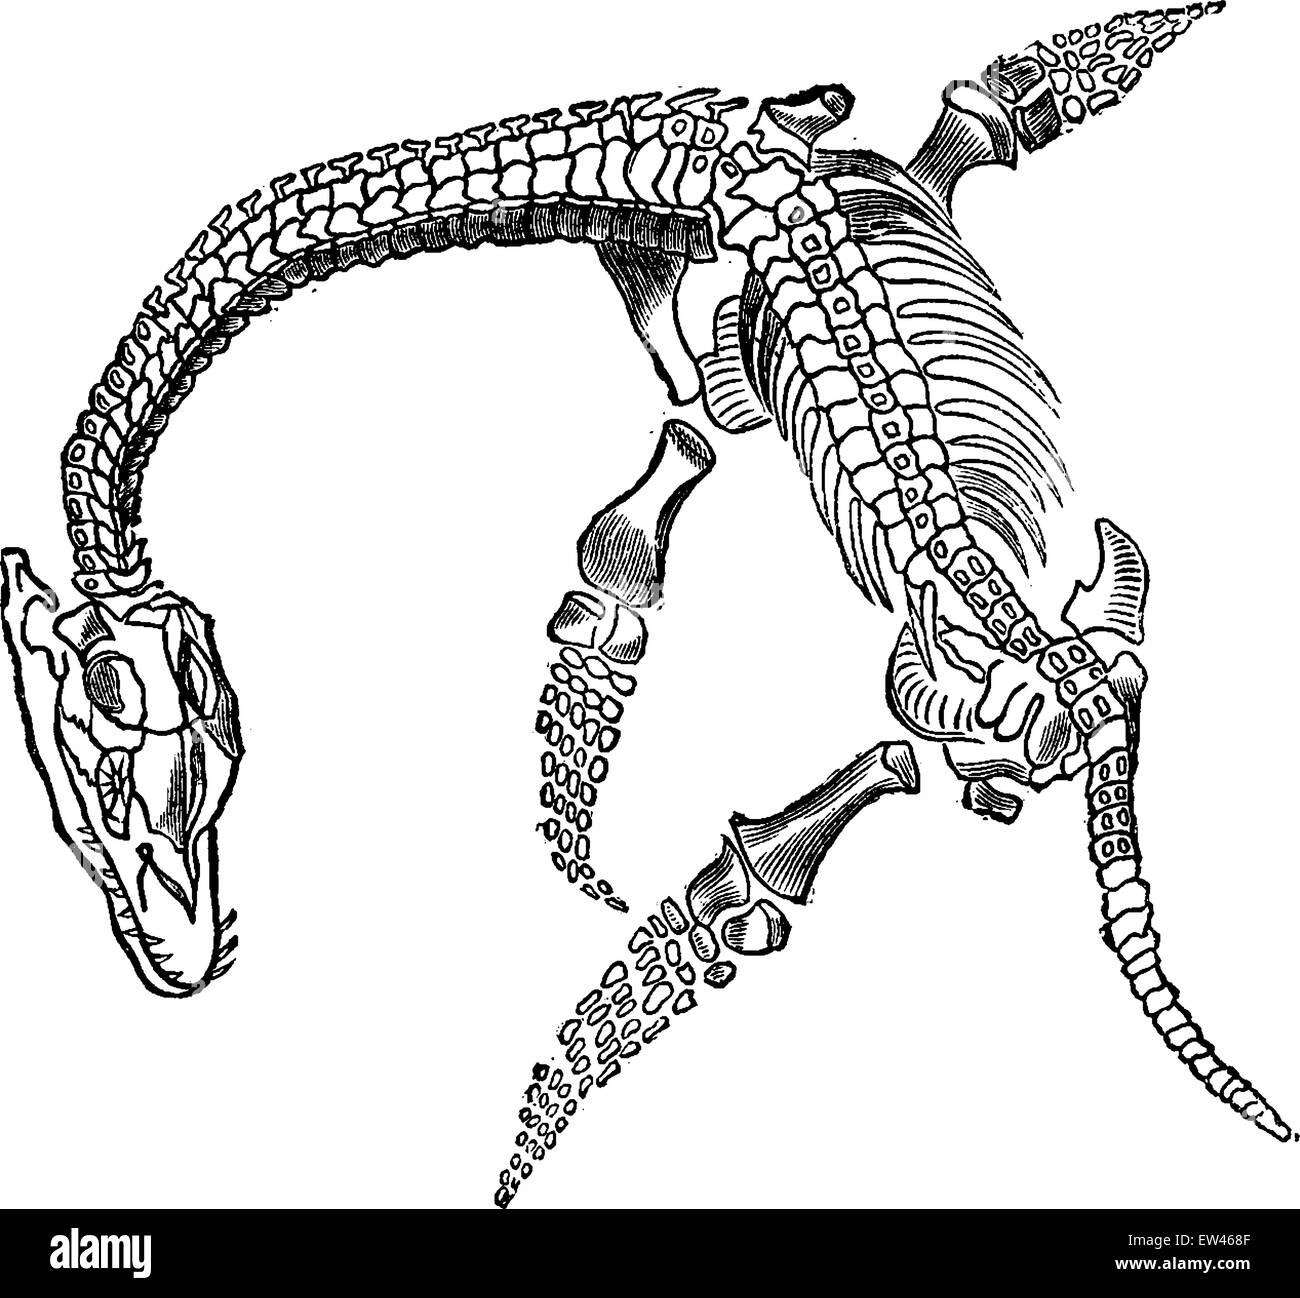 Espermatozoide fósiles de plesiosaurio, vintage ilustración grabada. La tierra antes de que el hombre - 1886. Ilustración del Vector